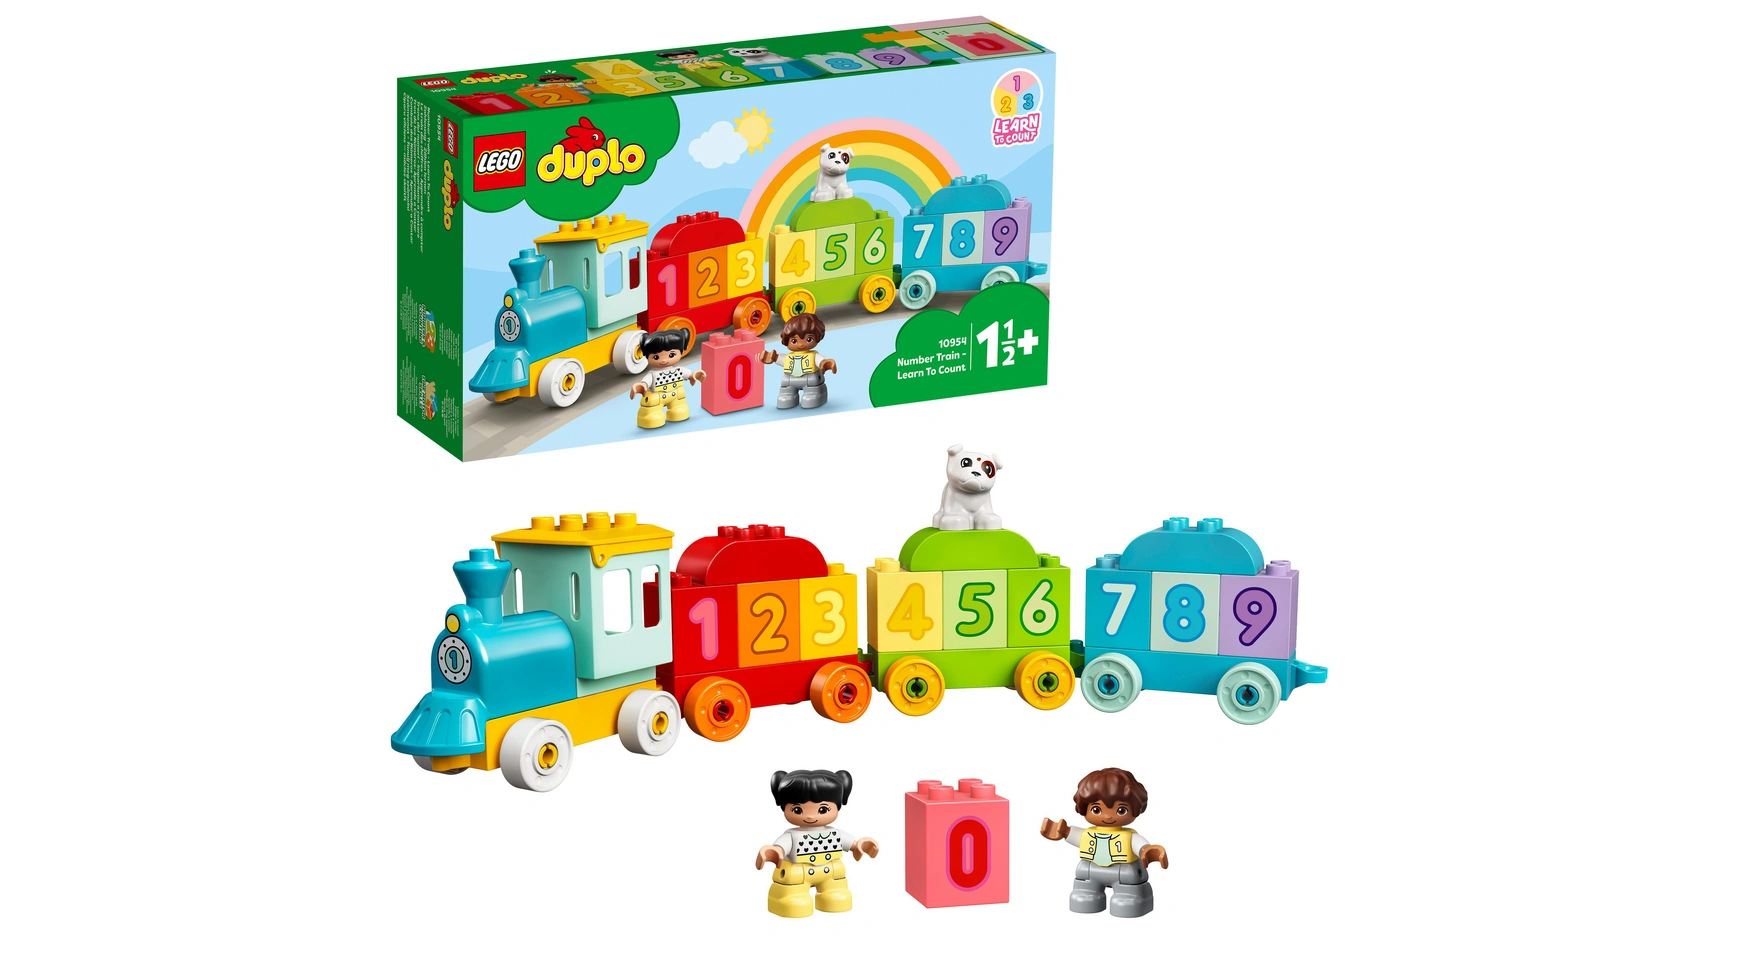 Lego DUPLO Цифровой поезд Учимся считать, детская игрушка, поезд lego 40166 legoland train